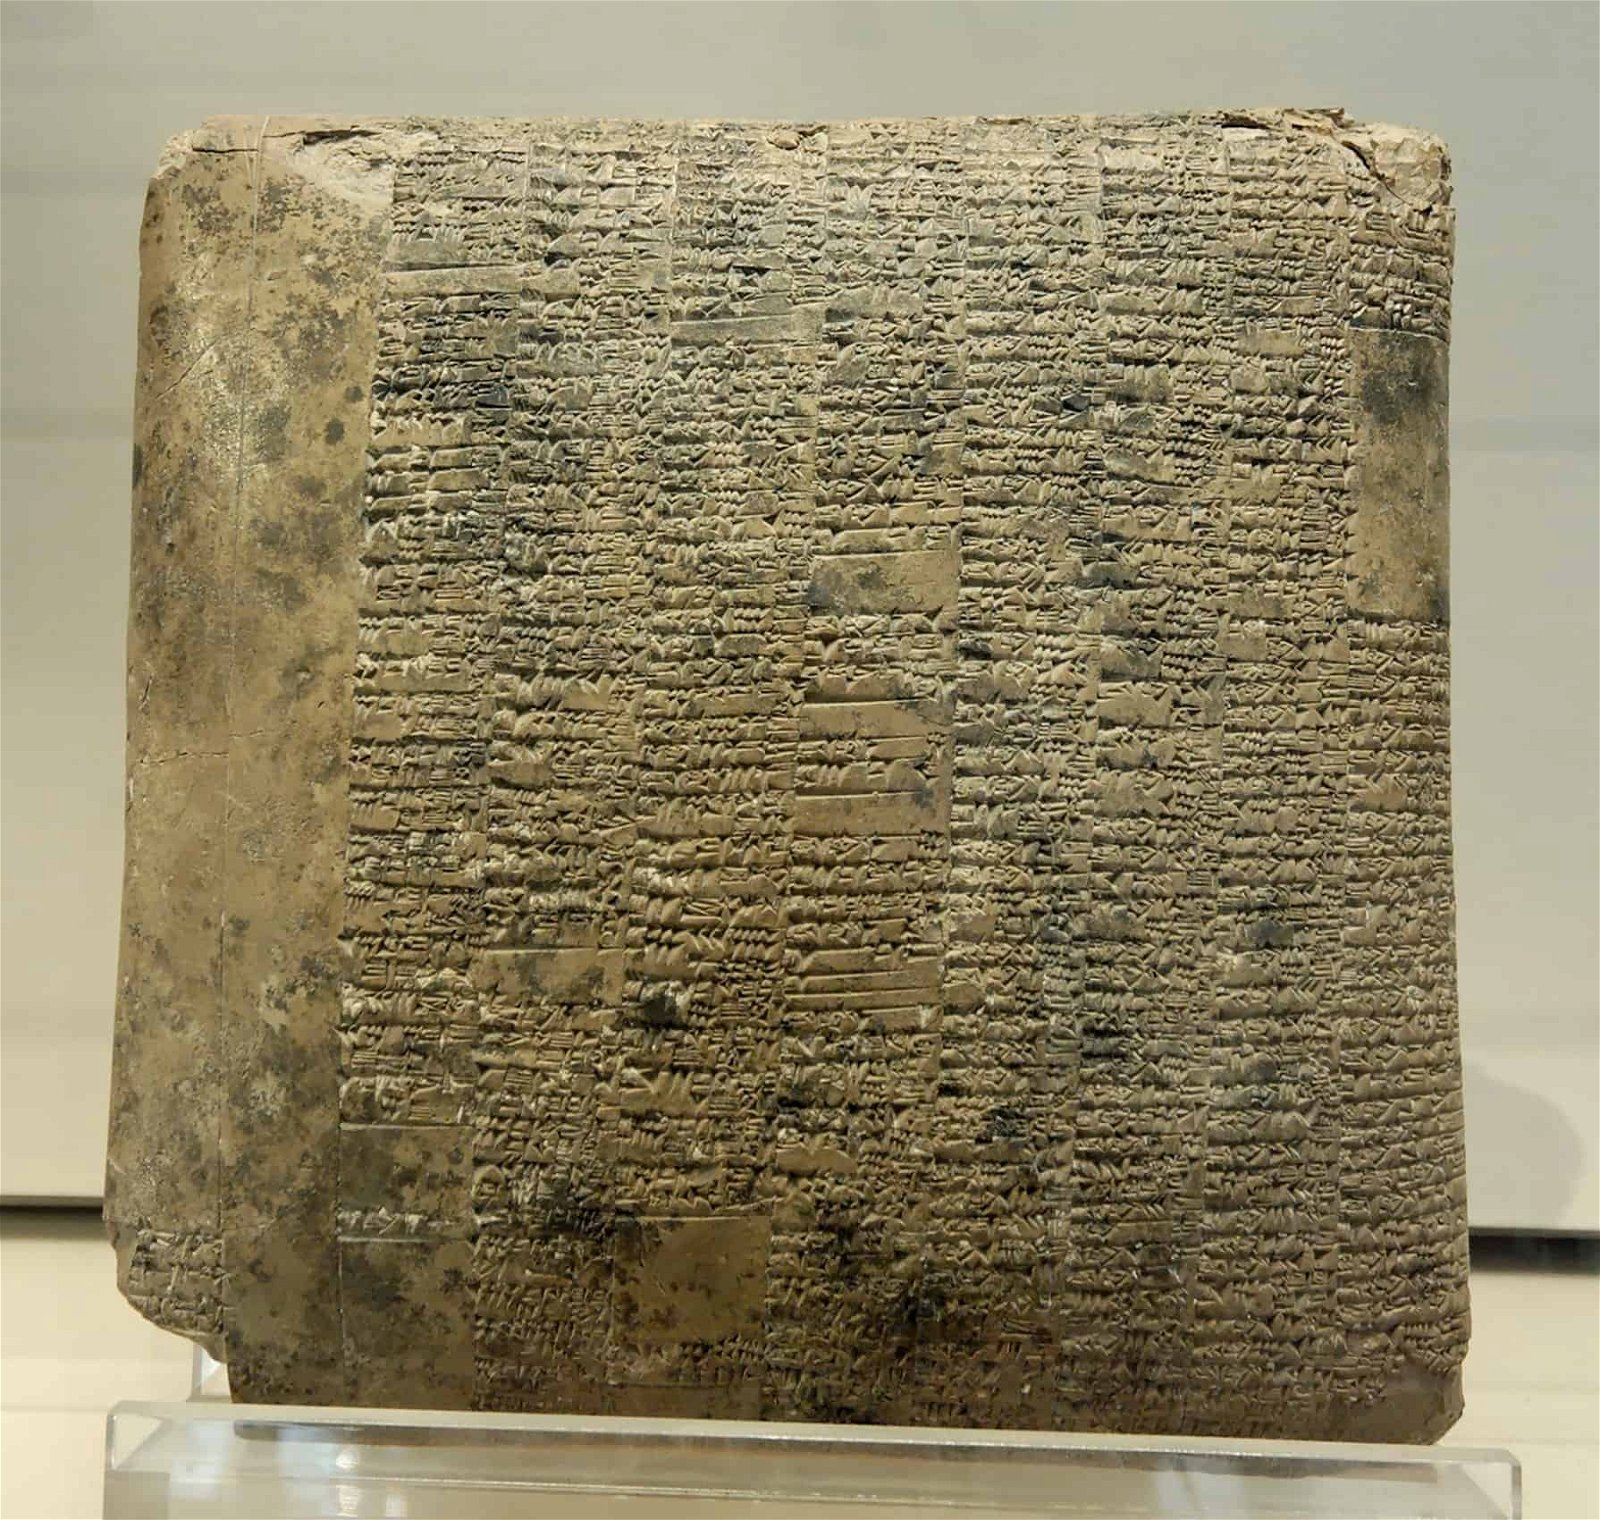 Une vieille tablette dans laquelle du texte est gravé.